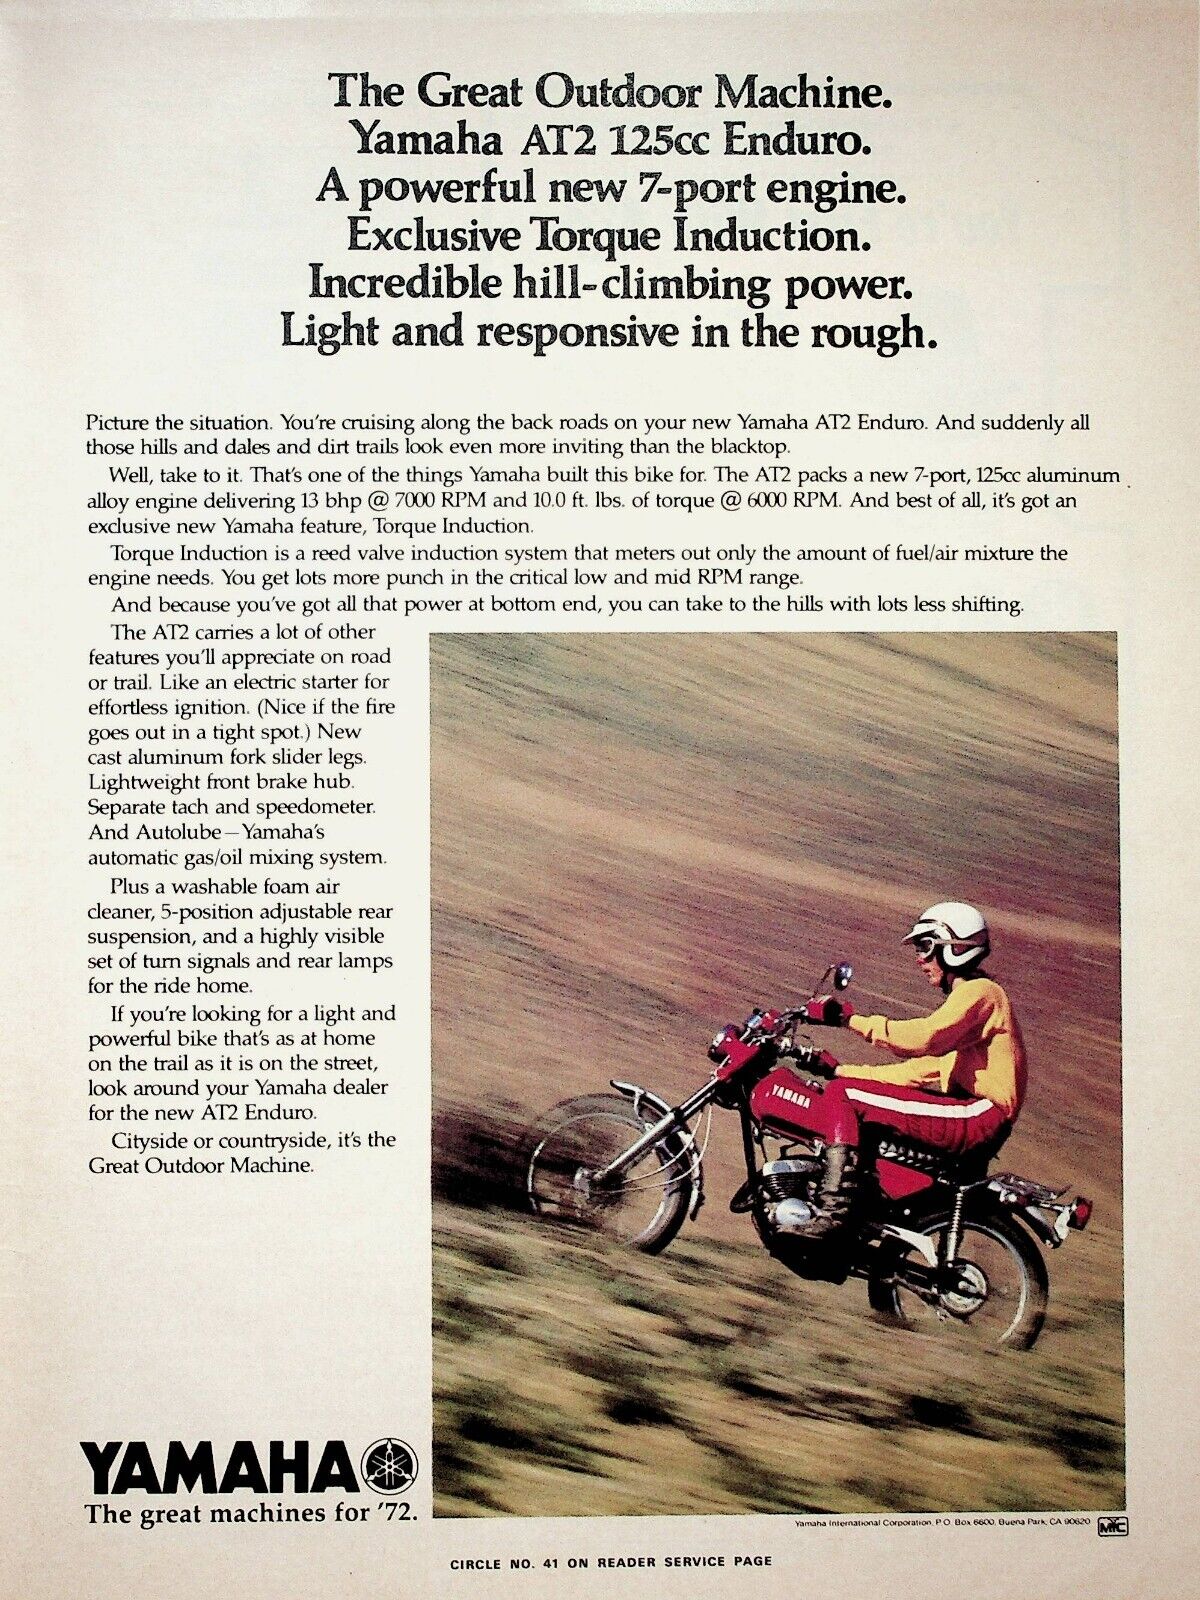 1972 Yamaha AT2 125 Enduro - Vintage Motorcycle Ad